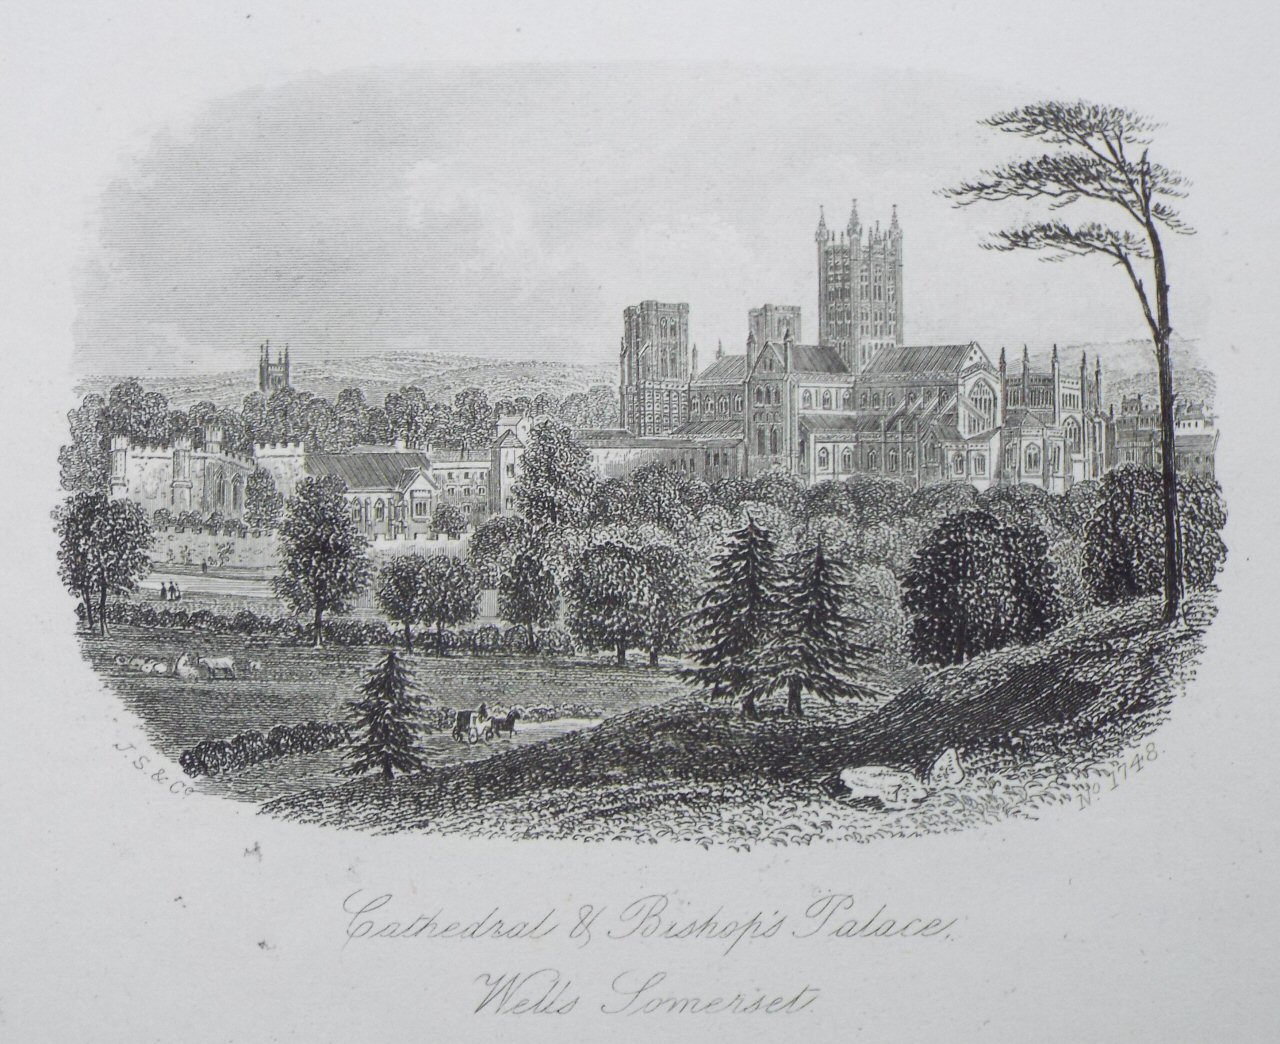 Steel Vignette - Cathedral & Bishop's Palace, Wells Somerset - J